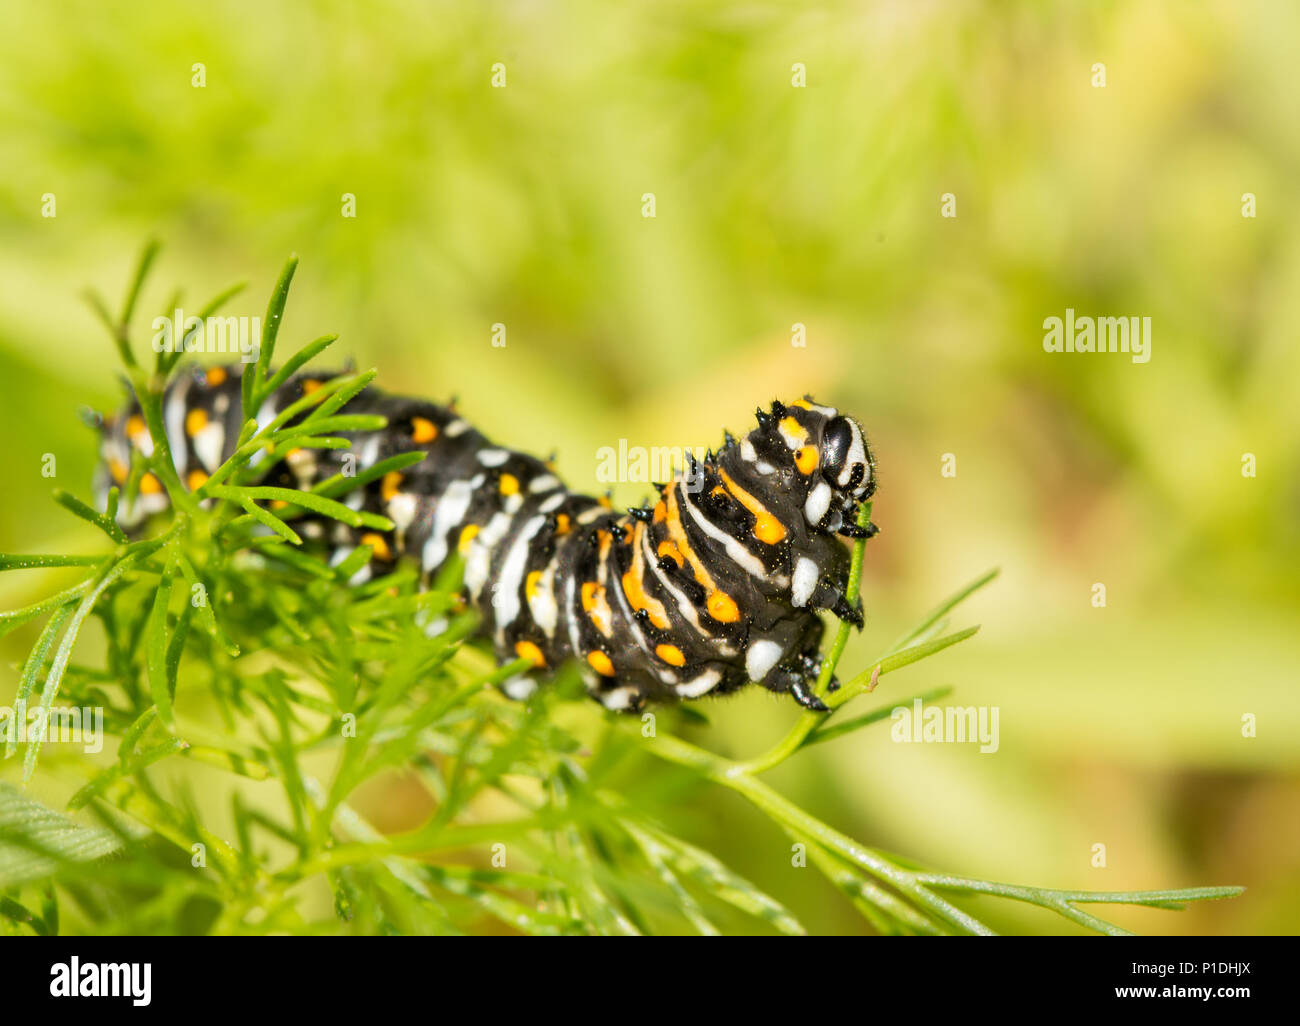 Quatrième stade black swallowtail butterfly caterpillar chien manger le fenouil au printemps Banque D'Images